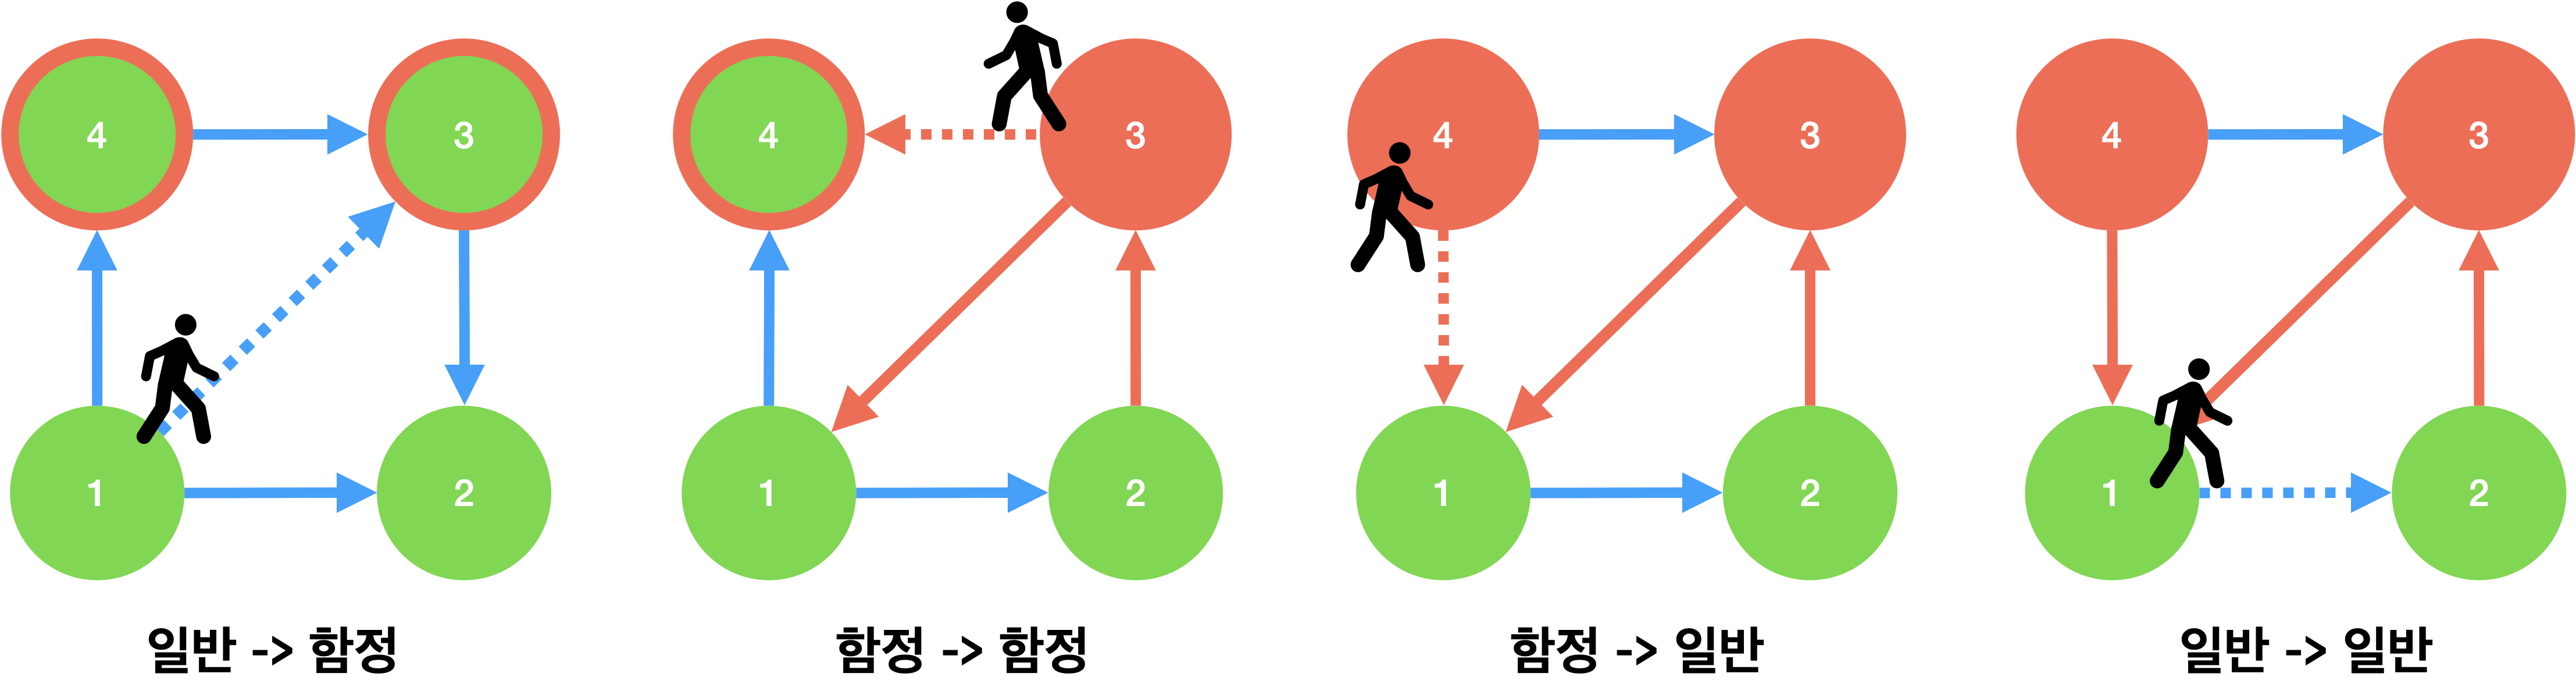 4가지 이동패턴 (점선: 다음 이동 경로, 붉은선: 역방향 간선)